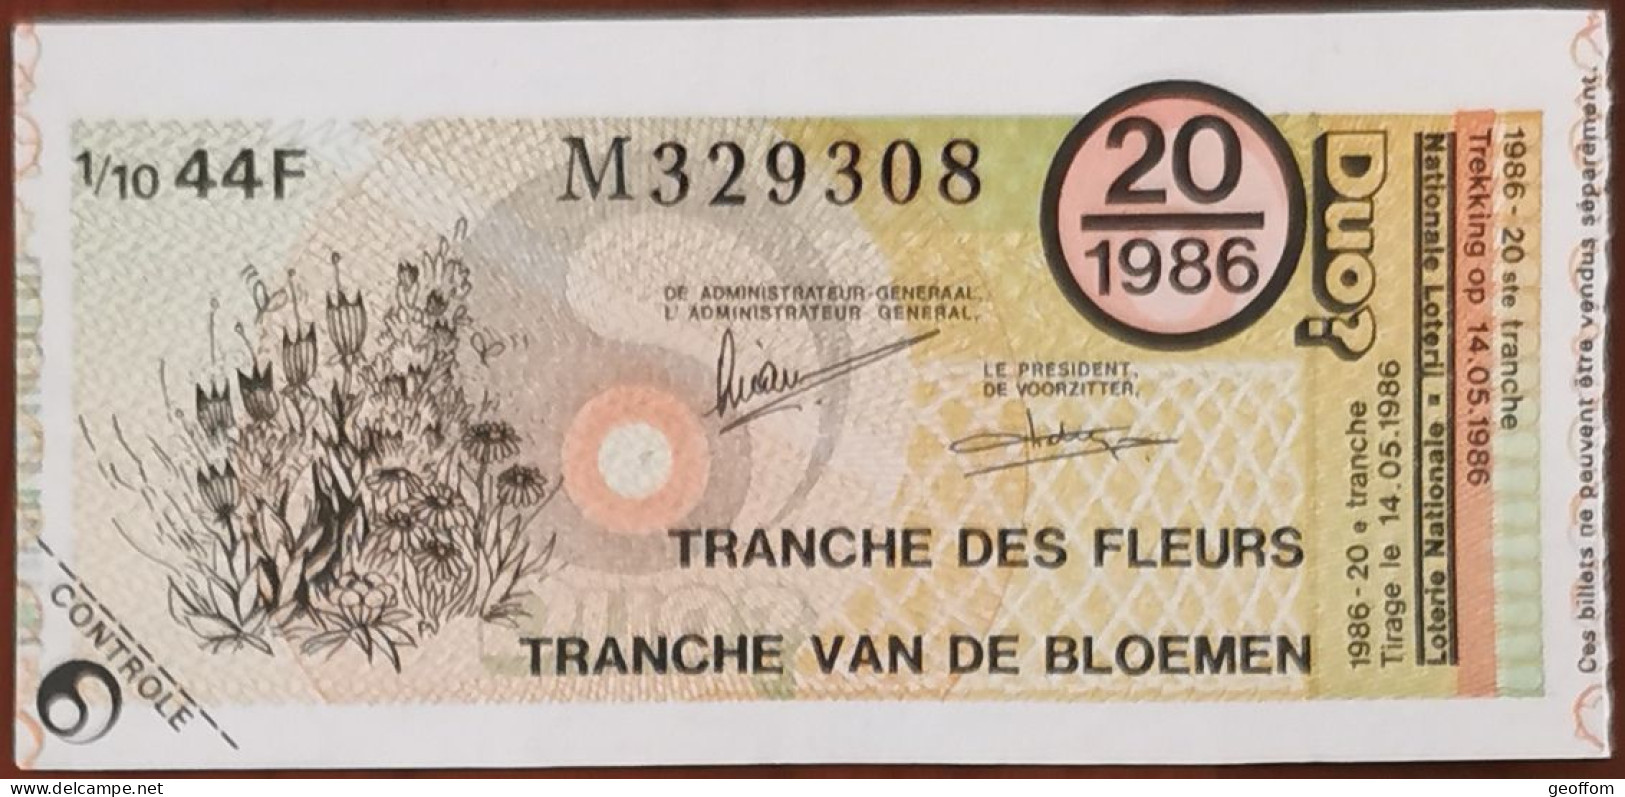 Billet De Loterie Nationale Belgique 1986 20e Tranche Des Fleurs - 14-5-1986 - Billetes De Lotería